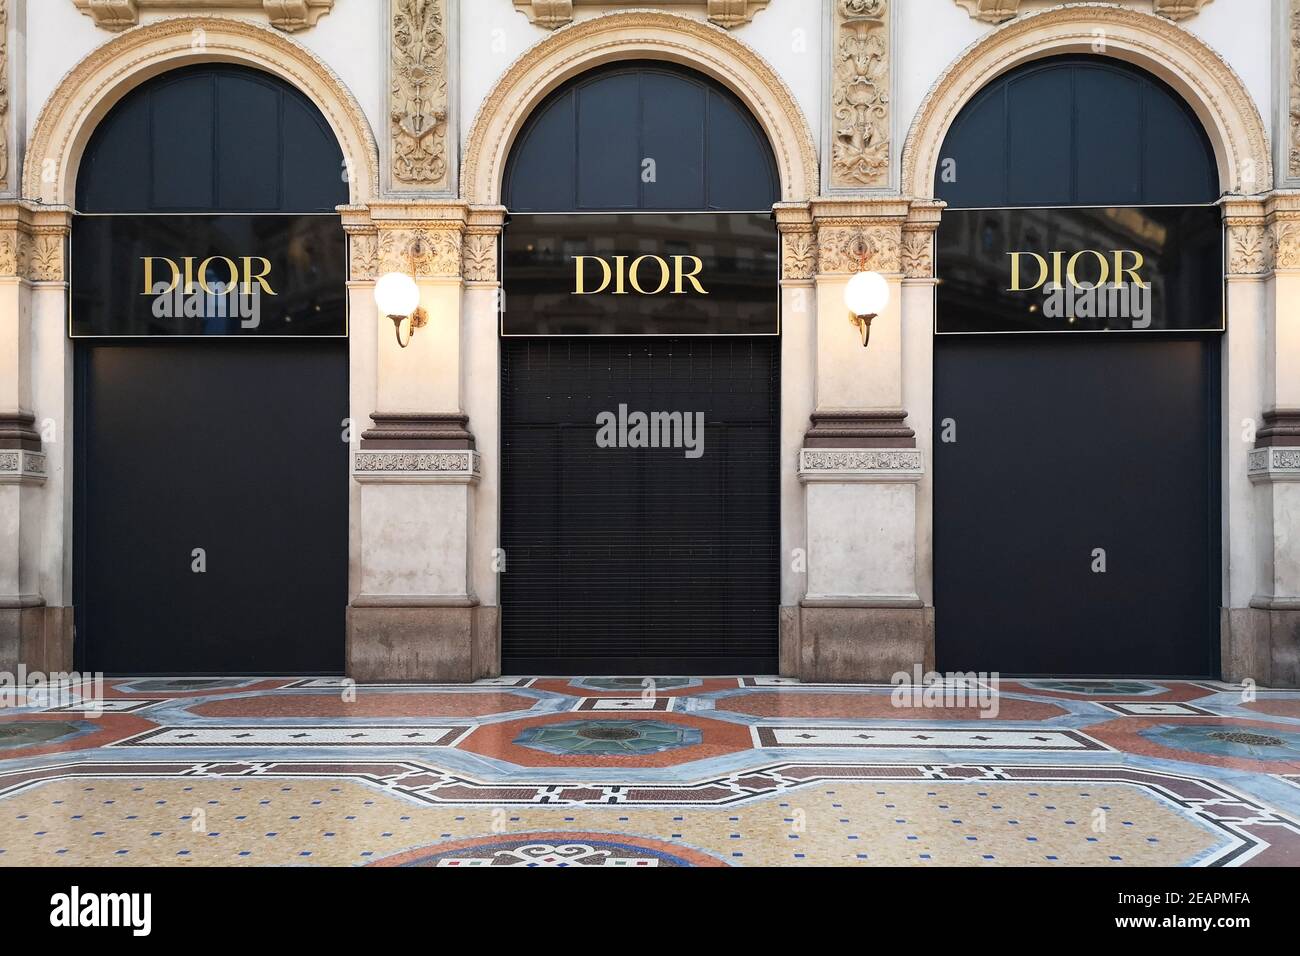 Chiuso il negozio Dior chiuso in Galleria Vittorio Emanuele II, Milano, Italia. L'industria della moda sta soffrendo a causa delle restrizioni covide al movimento Foto Stock